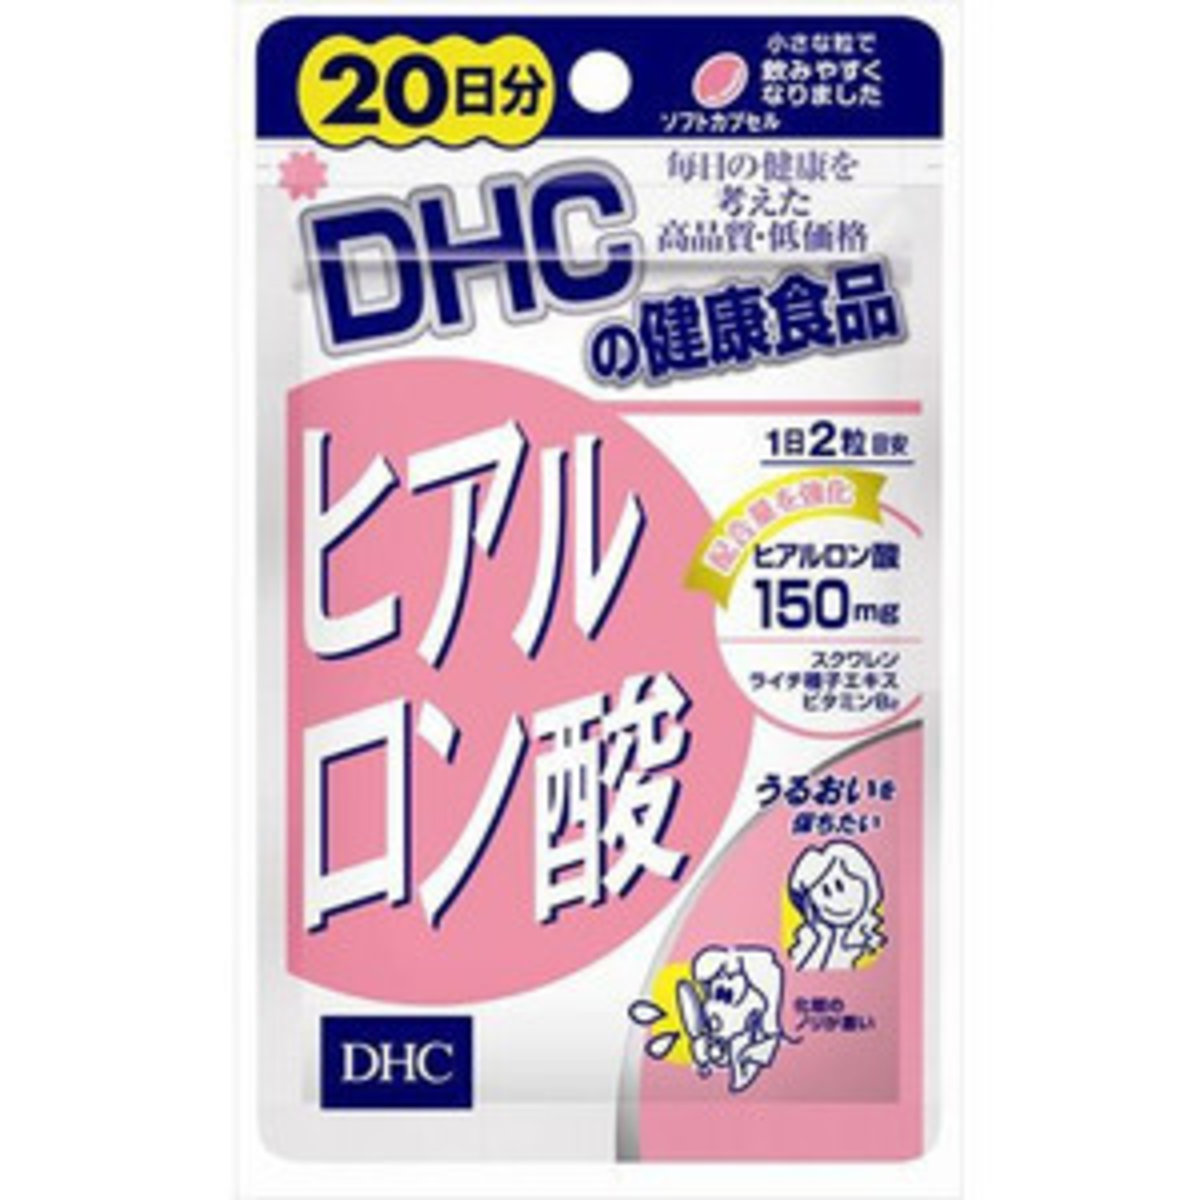 Viên uống cấp nước,chống lão hóa da HYALURONIC ACID DHC chính hãng Nhật Bản